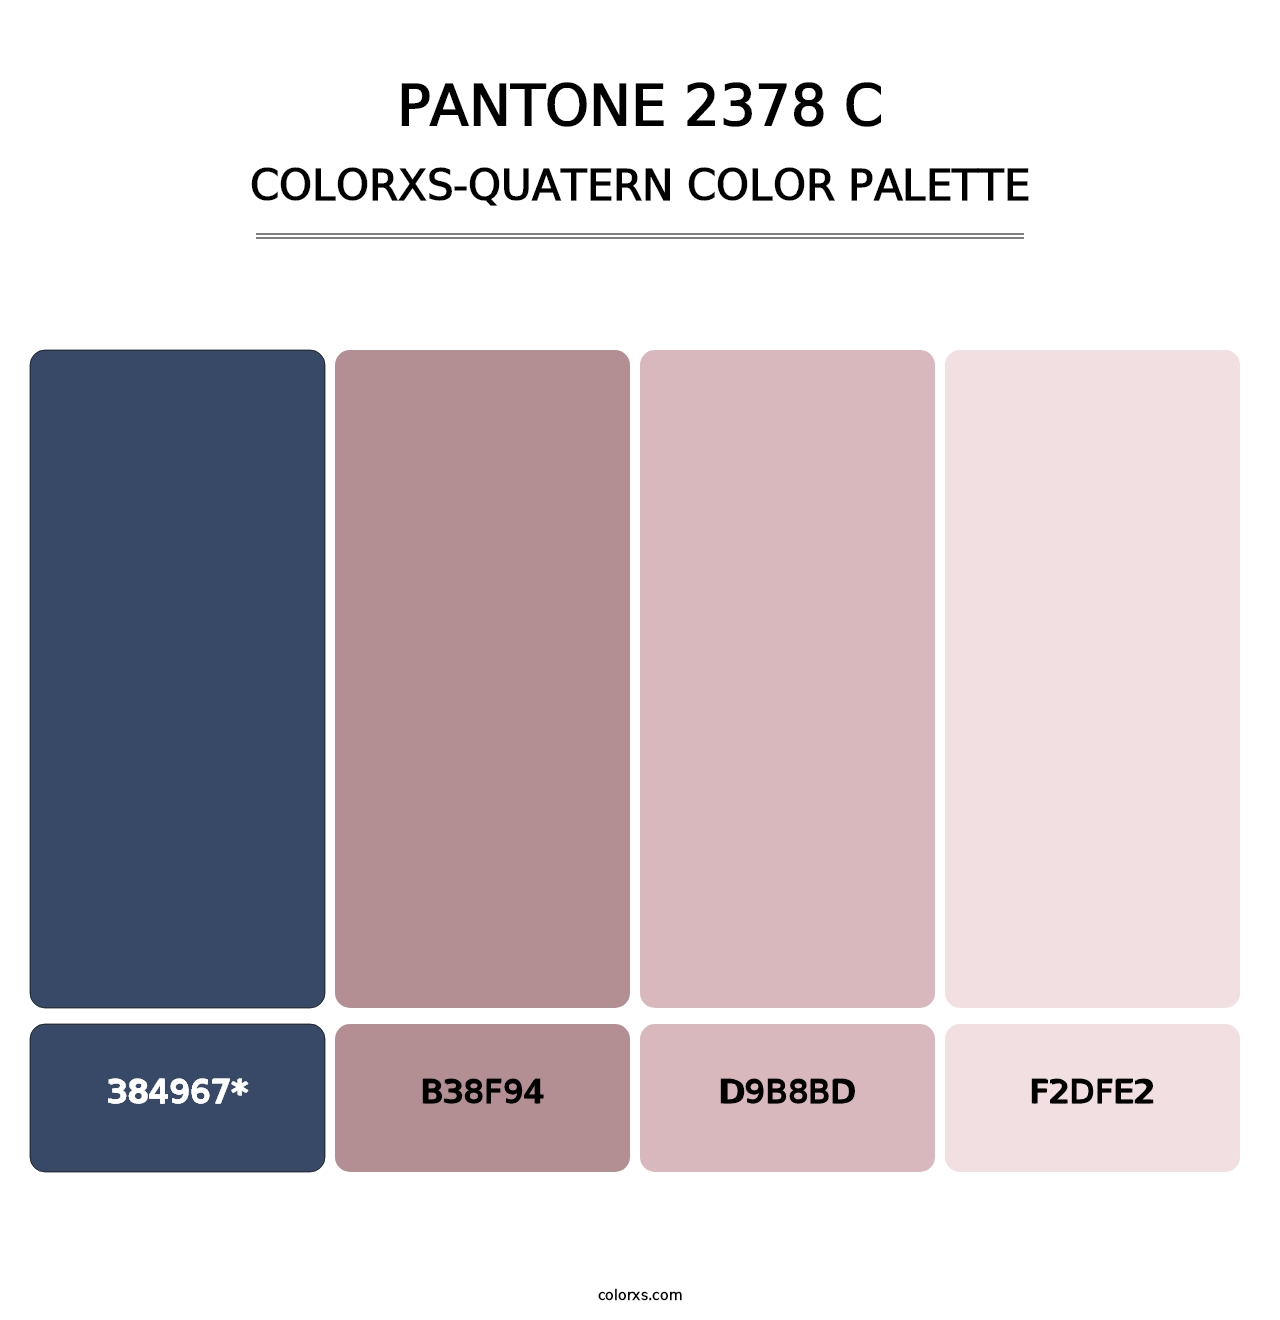 PANTONE 2378 C - Colorxs Quatern Palette